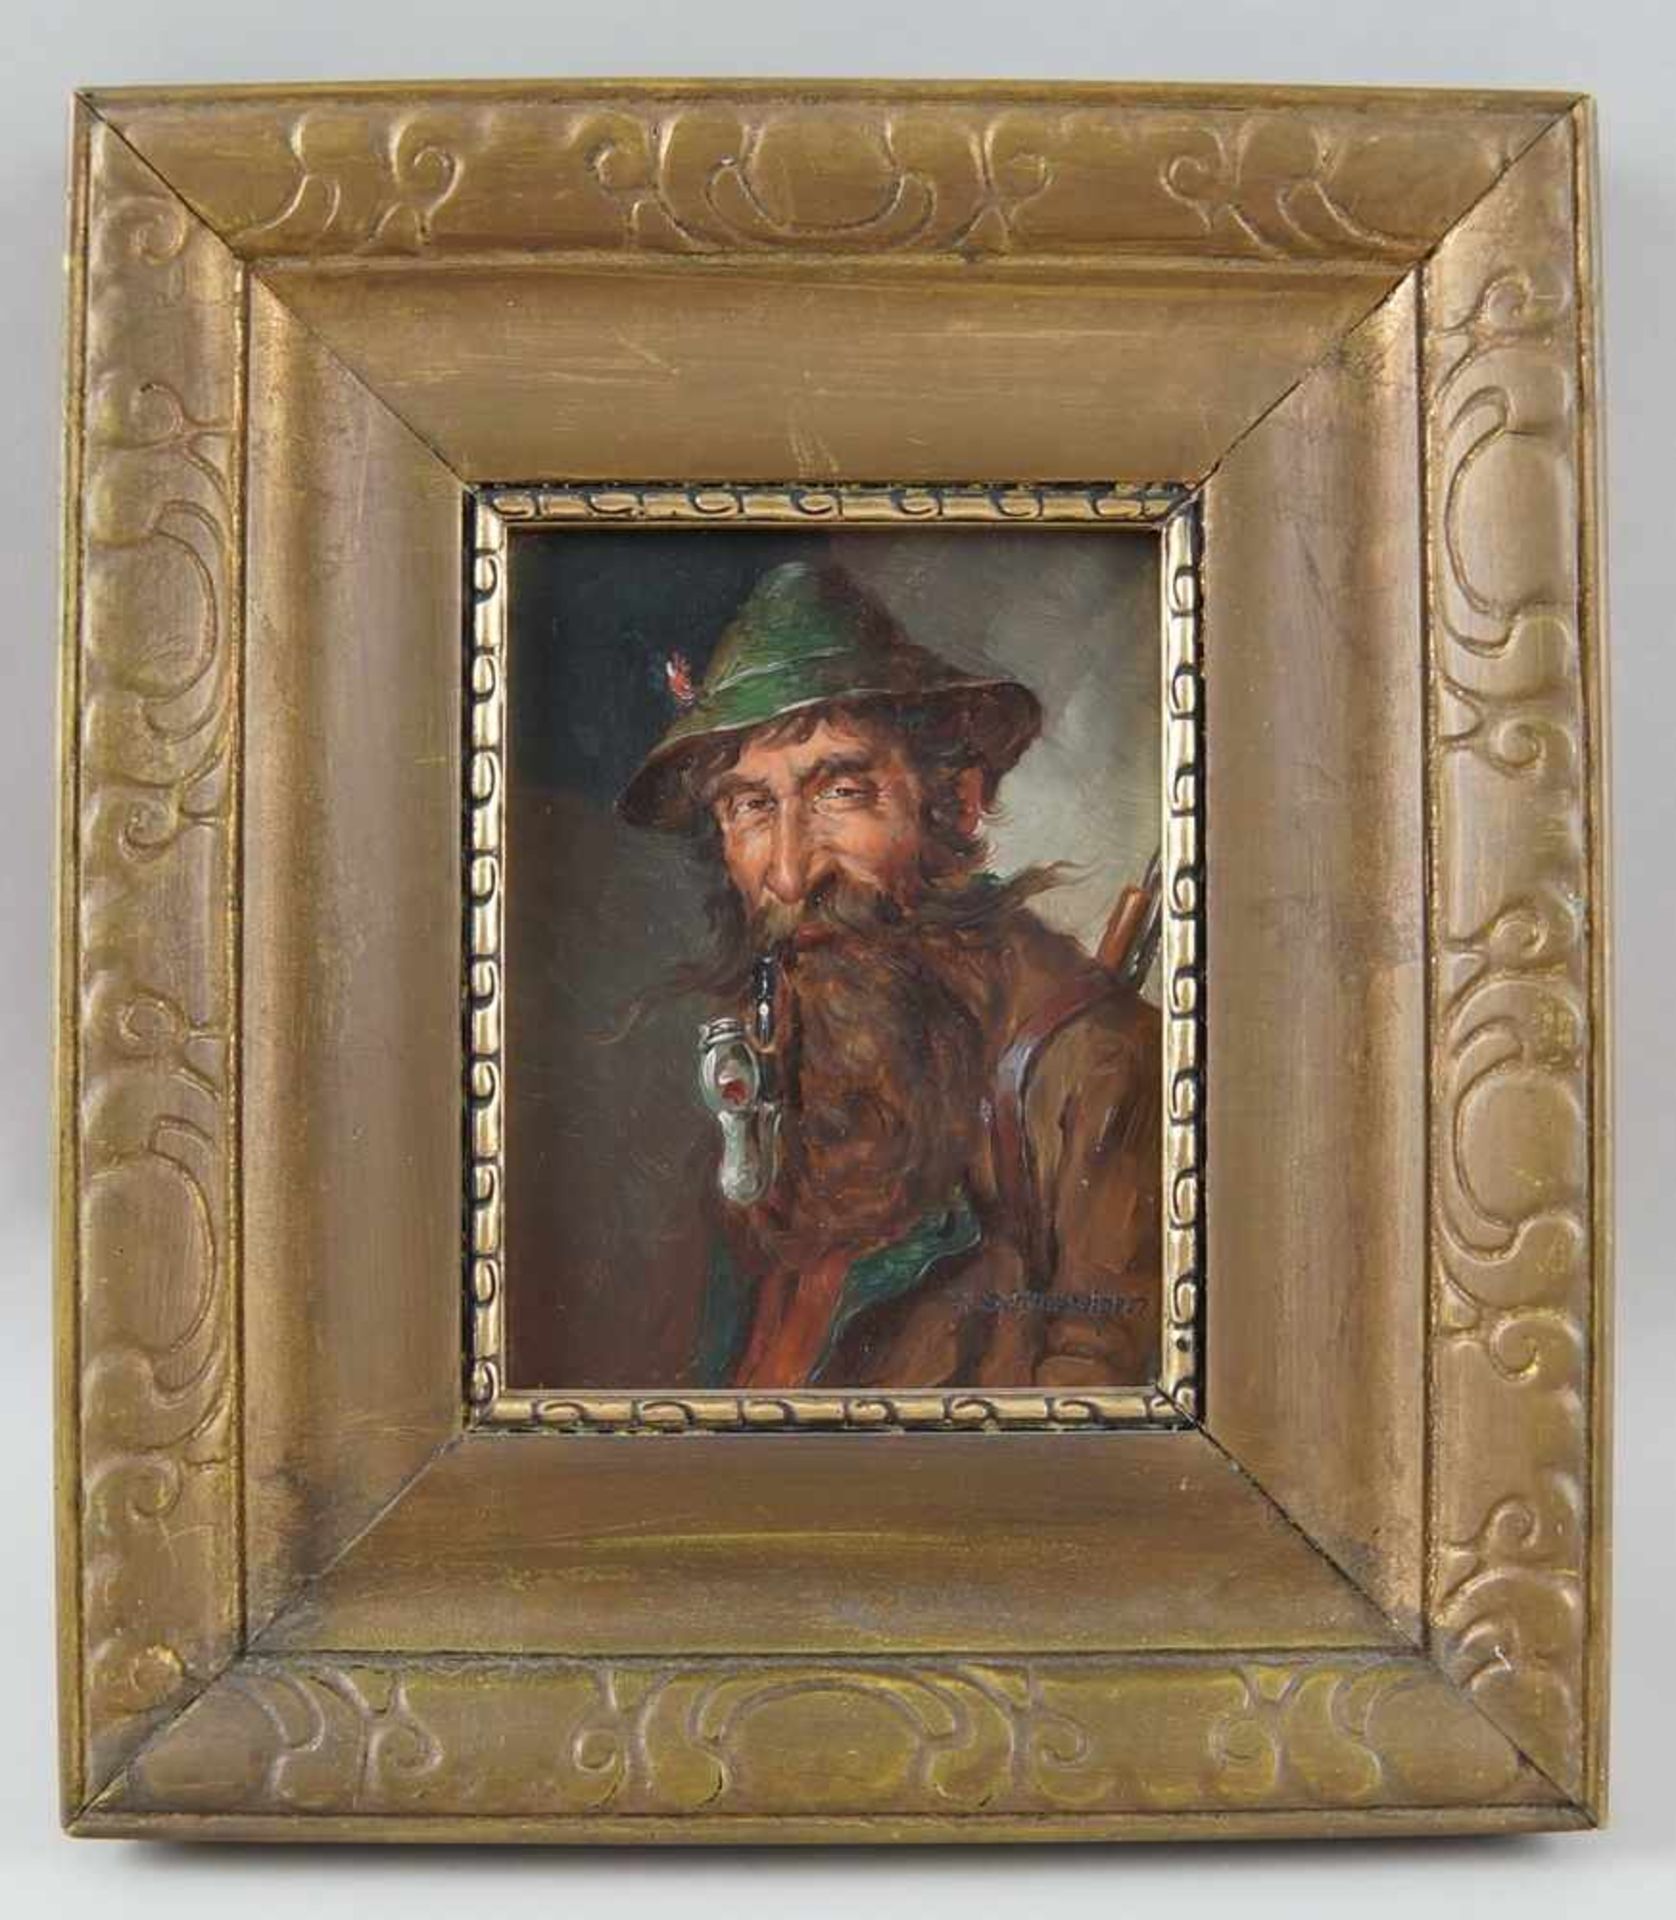 Jäger mit Hut und Pfeiffe, Öl auf Holz, gerahmt, signiert, W. Schmiedgen, 30x26cm- - -24.00 %